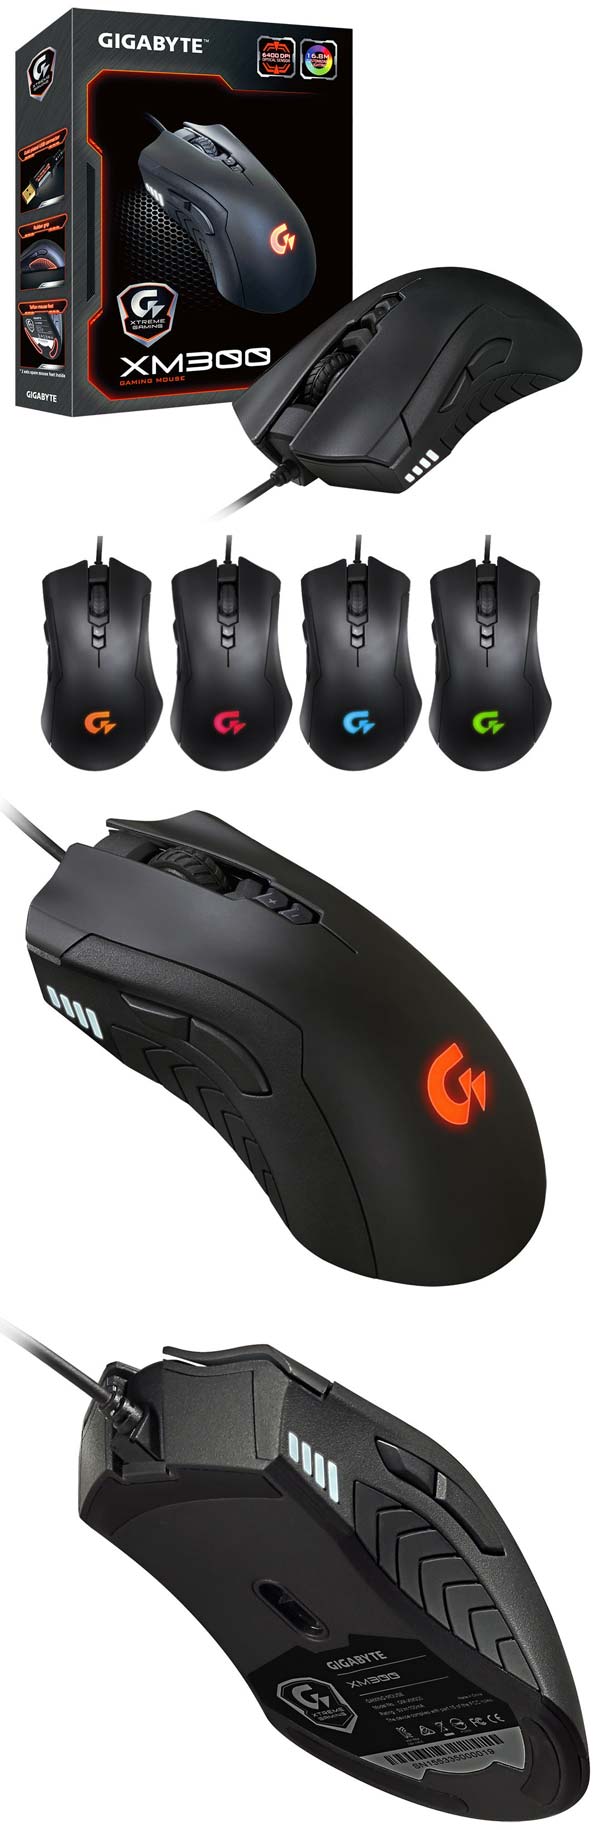 На фото можно увидеть игровую мышку Xtreme Gaming XM300 от Gigabyte